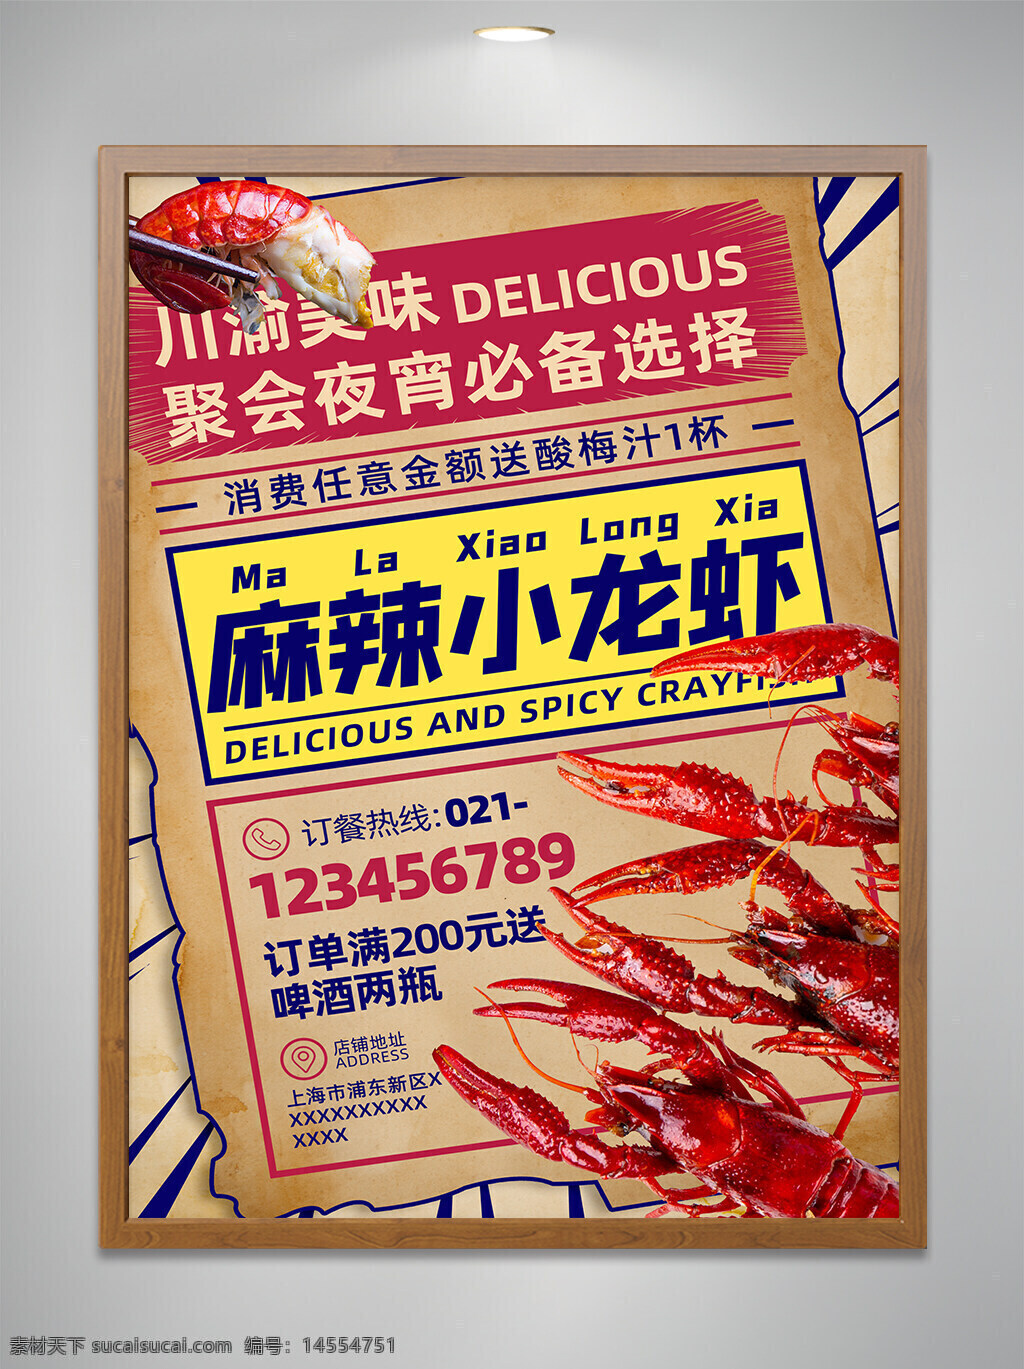 麻辣 小龙虾 美食 宣传 海报 设计 单页 宣传单 宵夜 聚会 川味 满减 优惠 促销